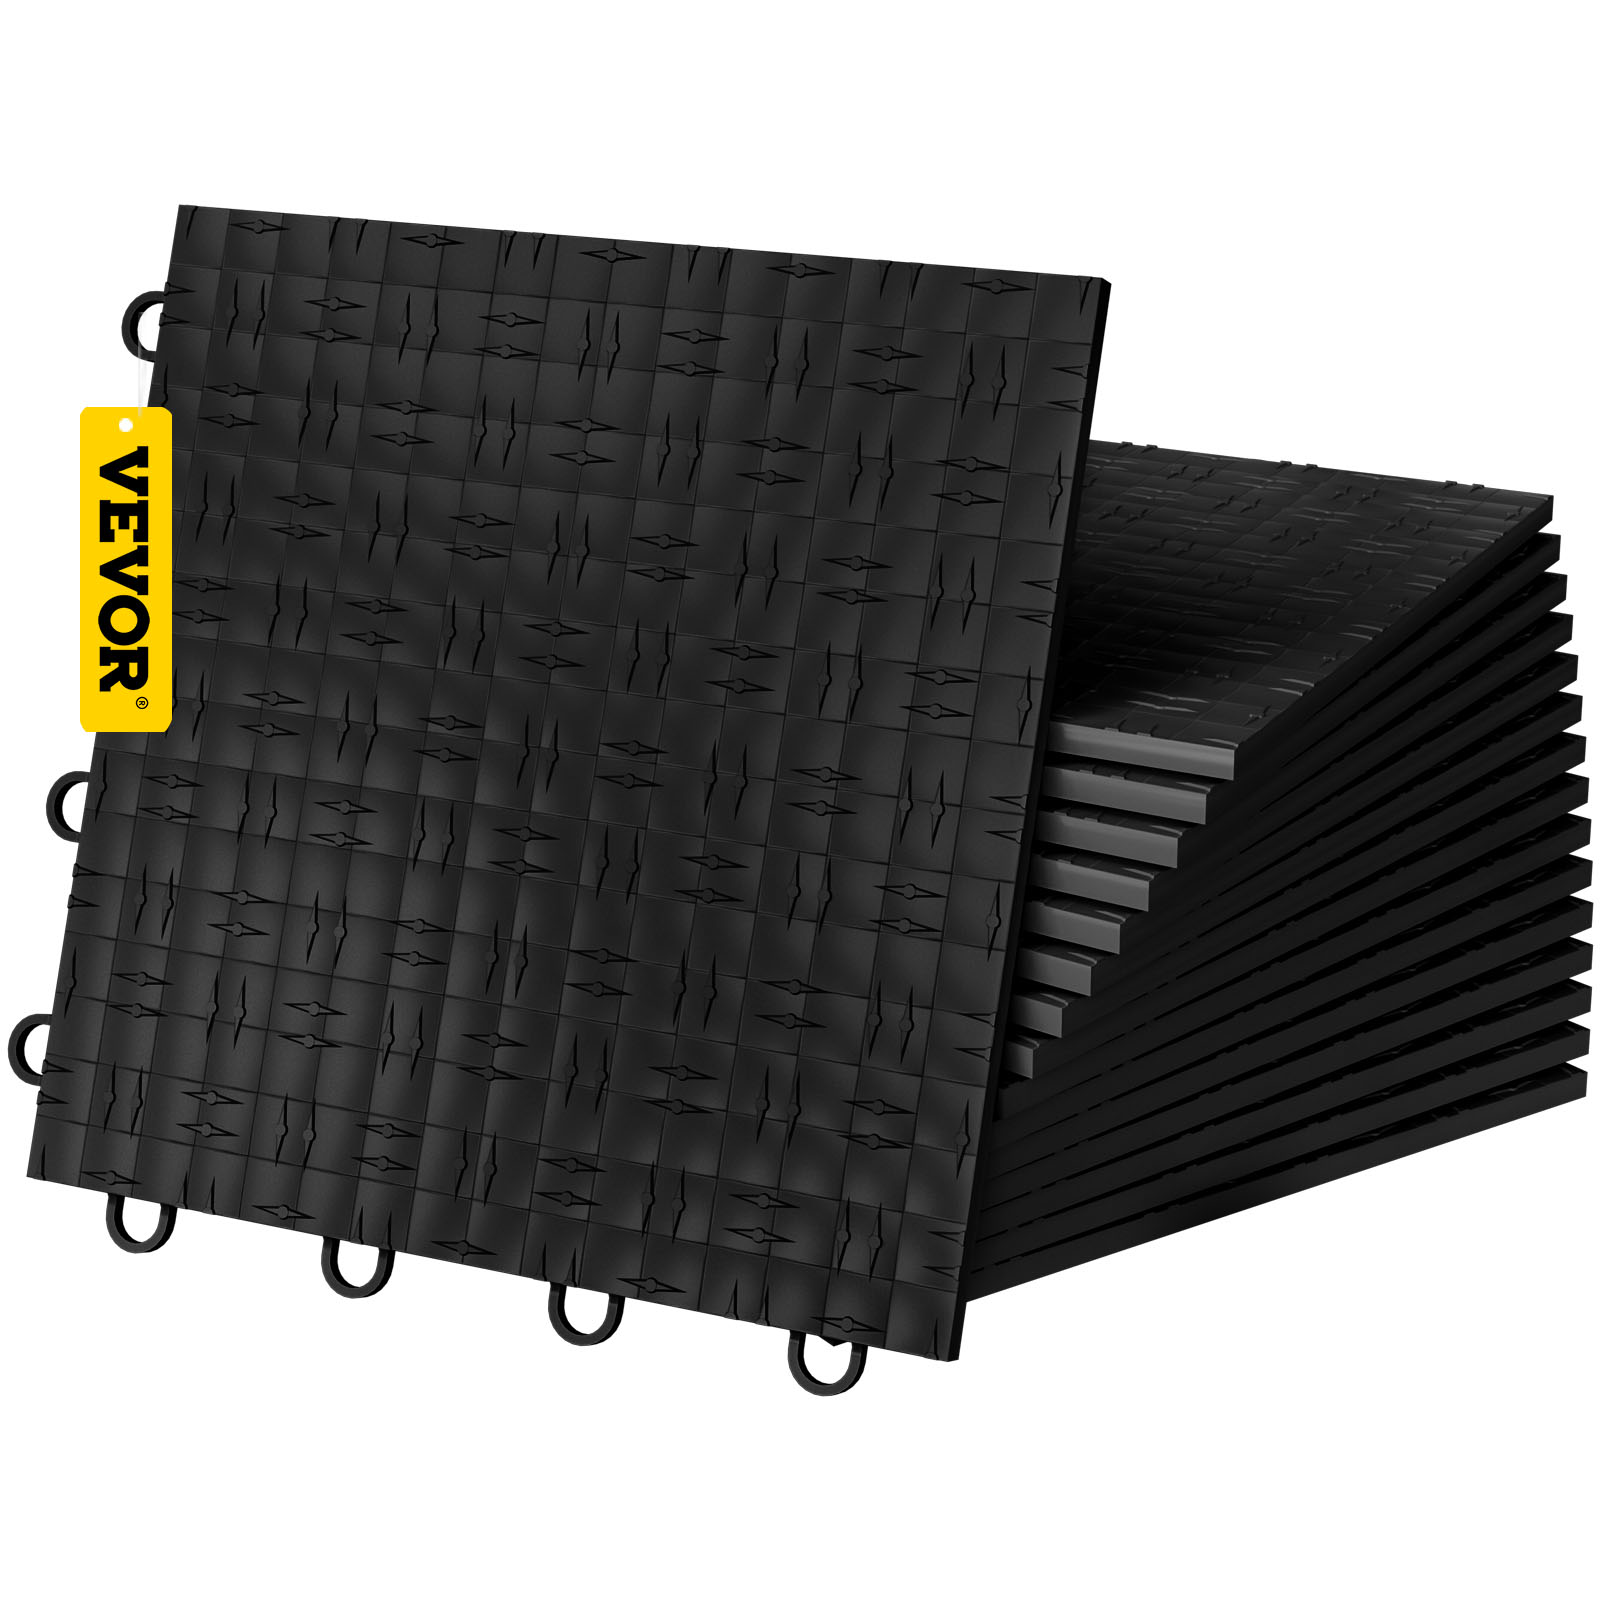 Vevor Garage Tiles Interlocking Garage Floor Covering Tiles 12x12" 25 Pack Black от Vevor Many GEOs